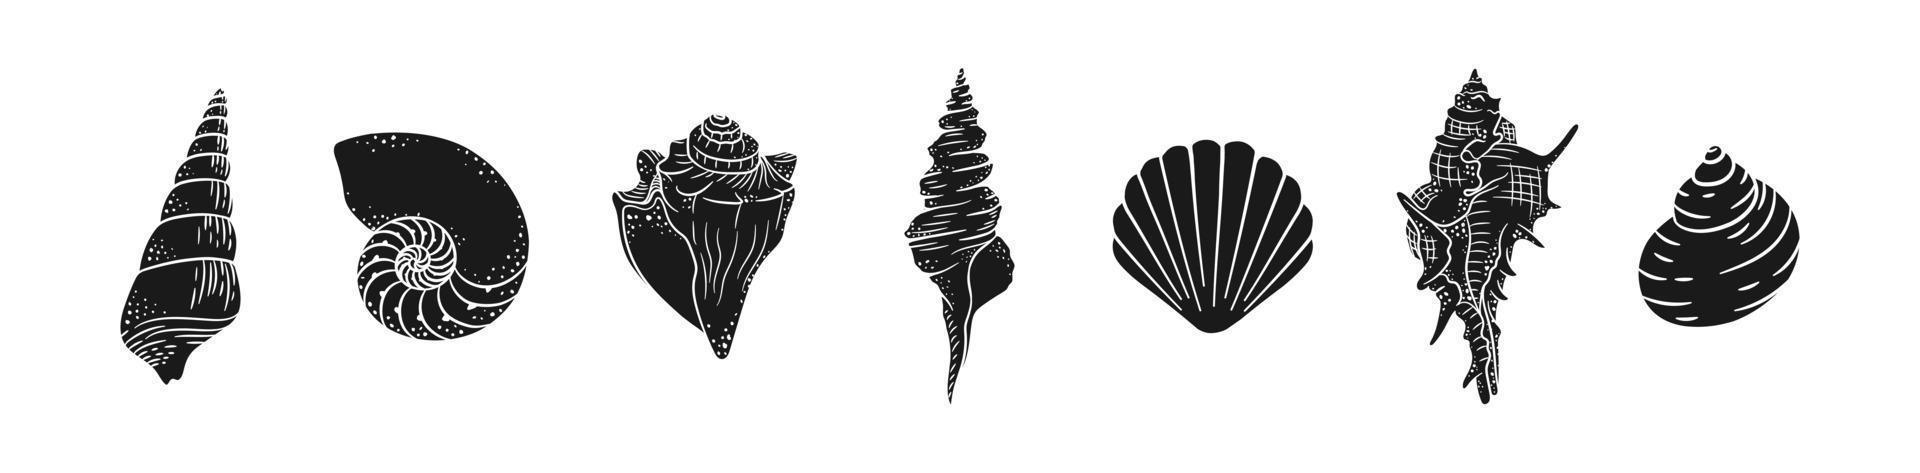 Muschel-Silhouette-Vektor-Illustration-Set. aquatische Meeresgrafiken für Menüs, Design von Fischrestaurants, Resort-Hotel-Spa, Surfbretter, Wandkunstdruck vektor